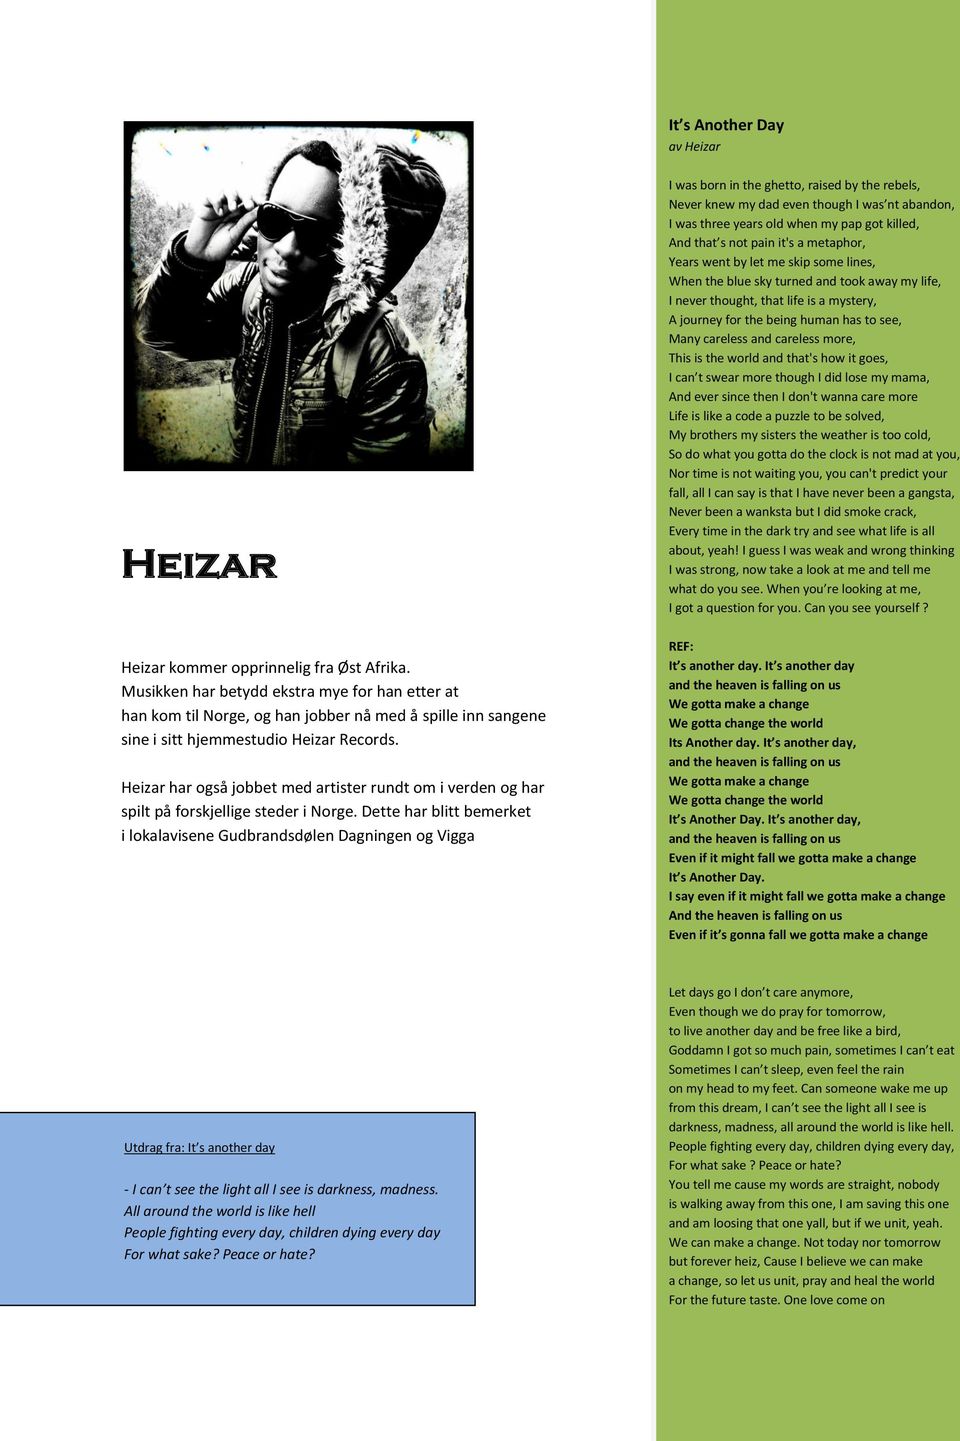 Heizar har også jobbet med artister rundt om i verden og har spilt på forskjellige steder i Norge.